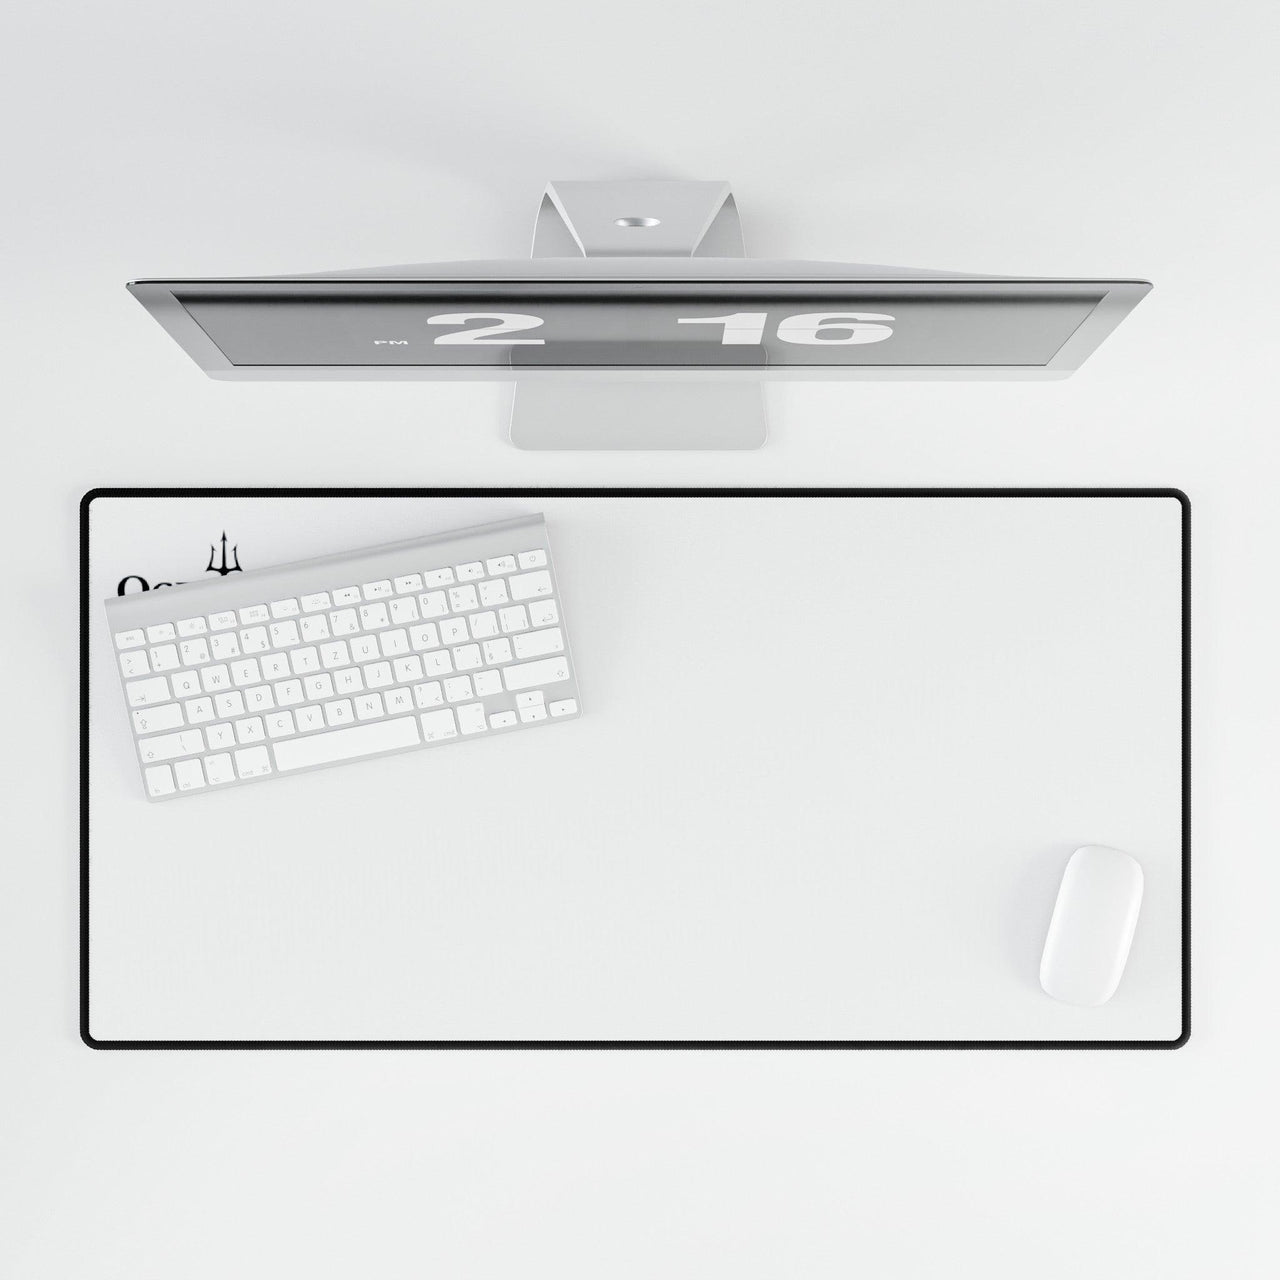 Desk Mats, Protect Your Desktop - 26061821837662363818 Accessories, Desk, Mouse pad, Mouse Pads, Sublimation